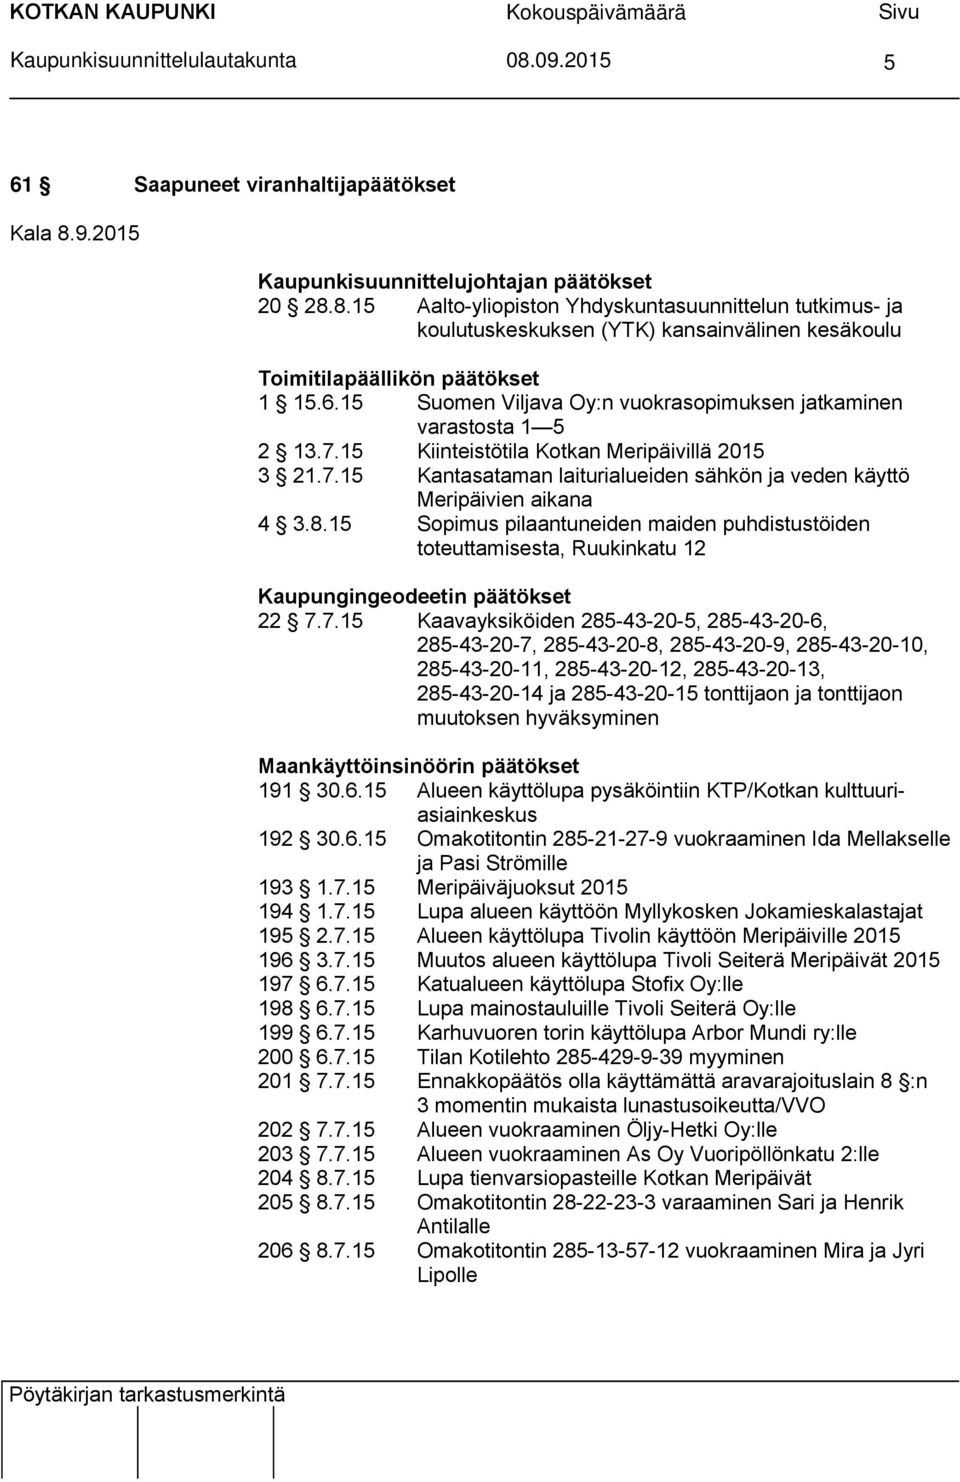 6.15 Suomen Viljava Oy:n vuokrasopimuksen jatkaminen varastosta 1 5 2 13.7.15 Kiinteistötila Kotkan Meripäivillä 2015 3 21.7.15 Kantasataman laiturialueiden sähkön ja veden käyttö Meripäivien aikana 4 3.